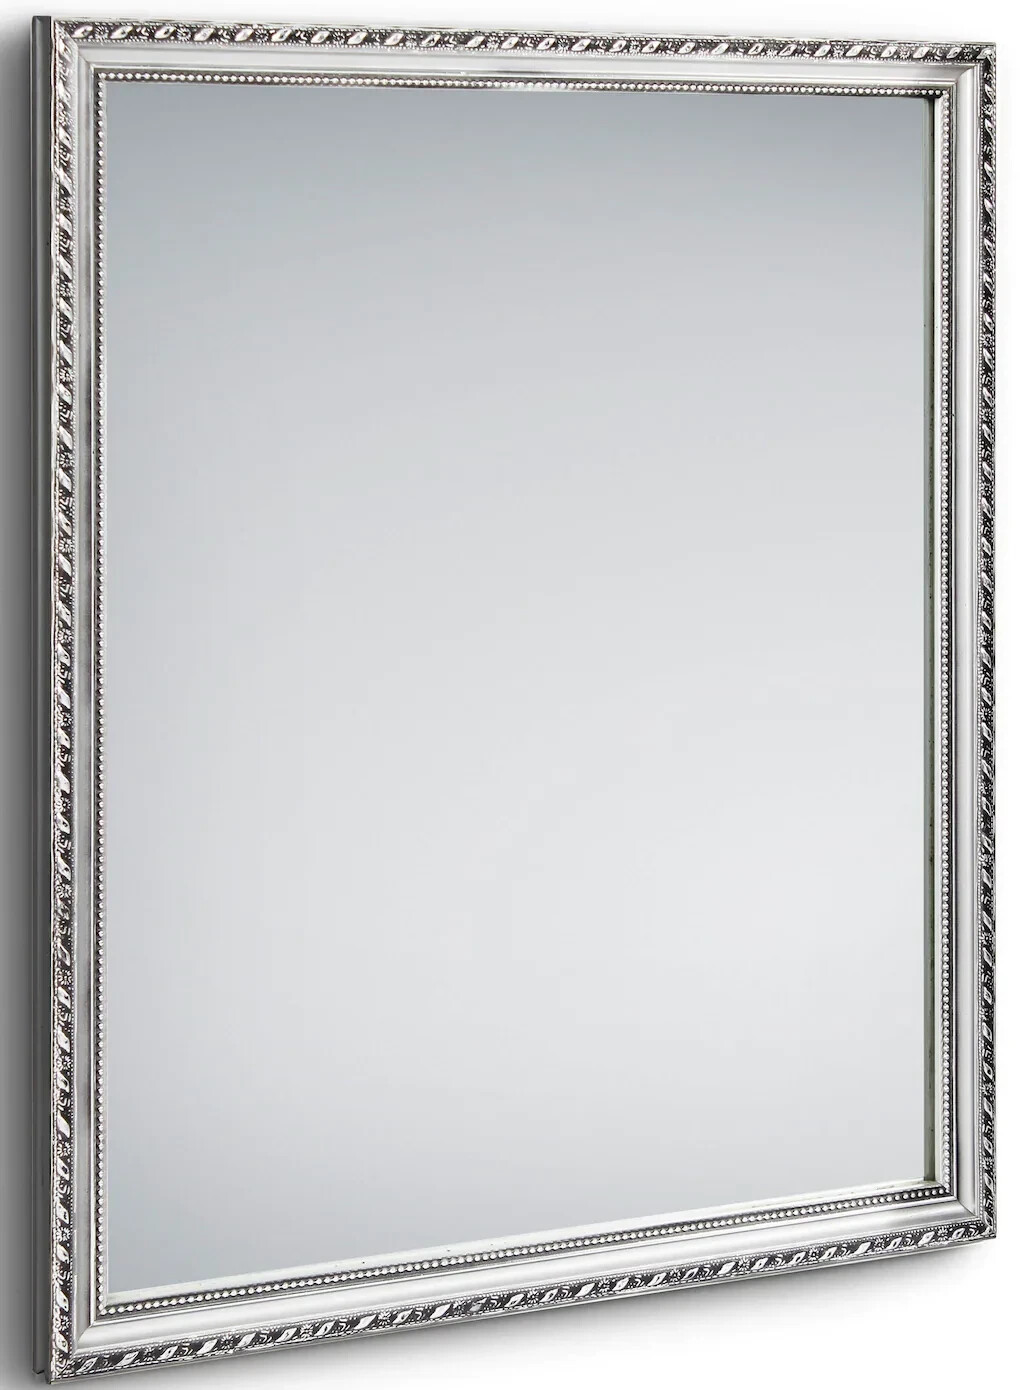 24,95 LOLA Rahmen Wandspiegel ab € More Silber Mirrors bei | 34x45cm and in Preisvergleich mit